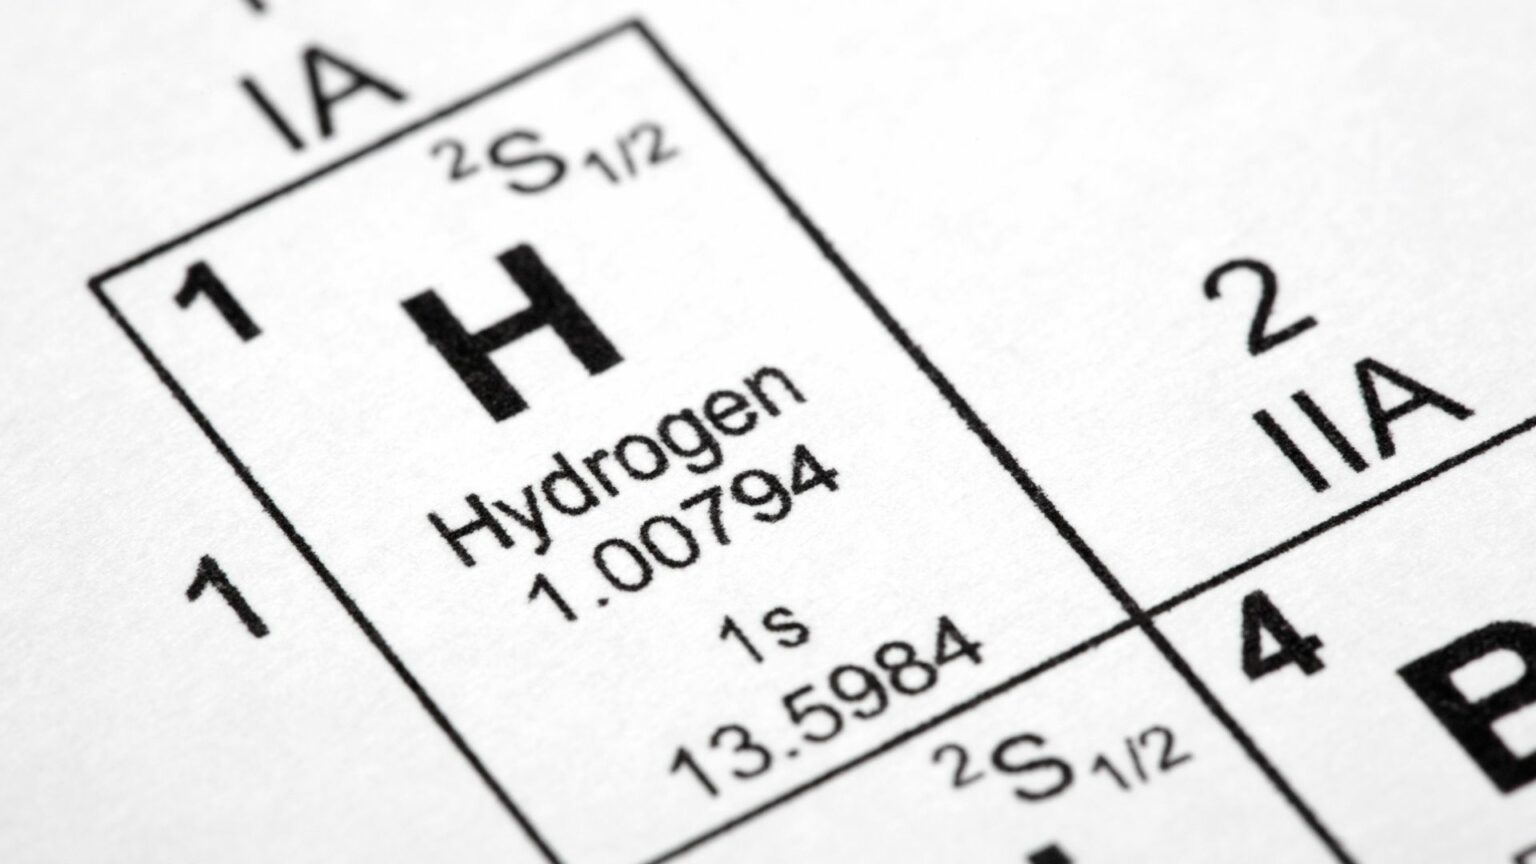 FOEI's Critique of Hydrogen Production Sources